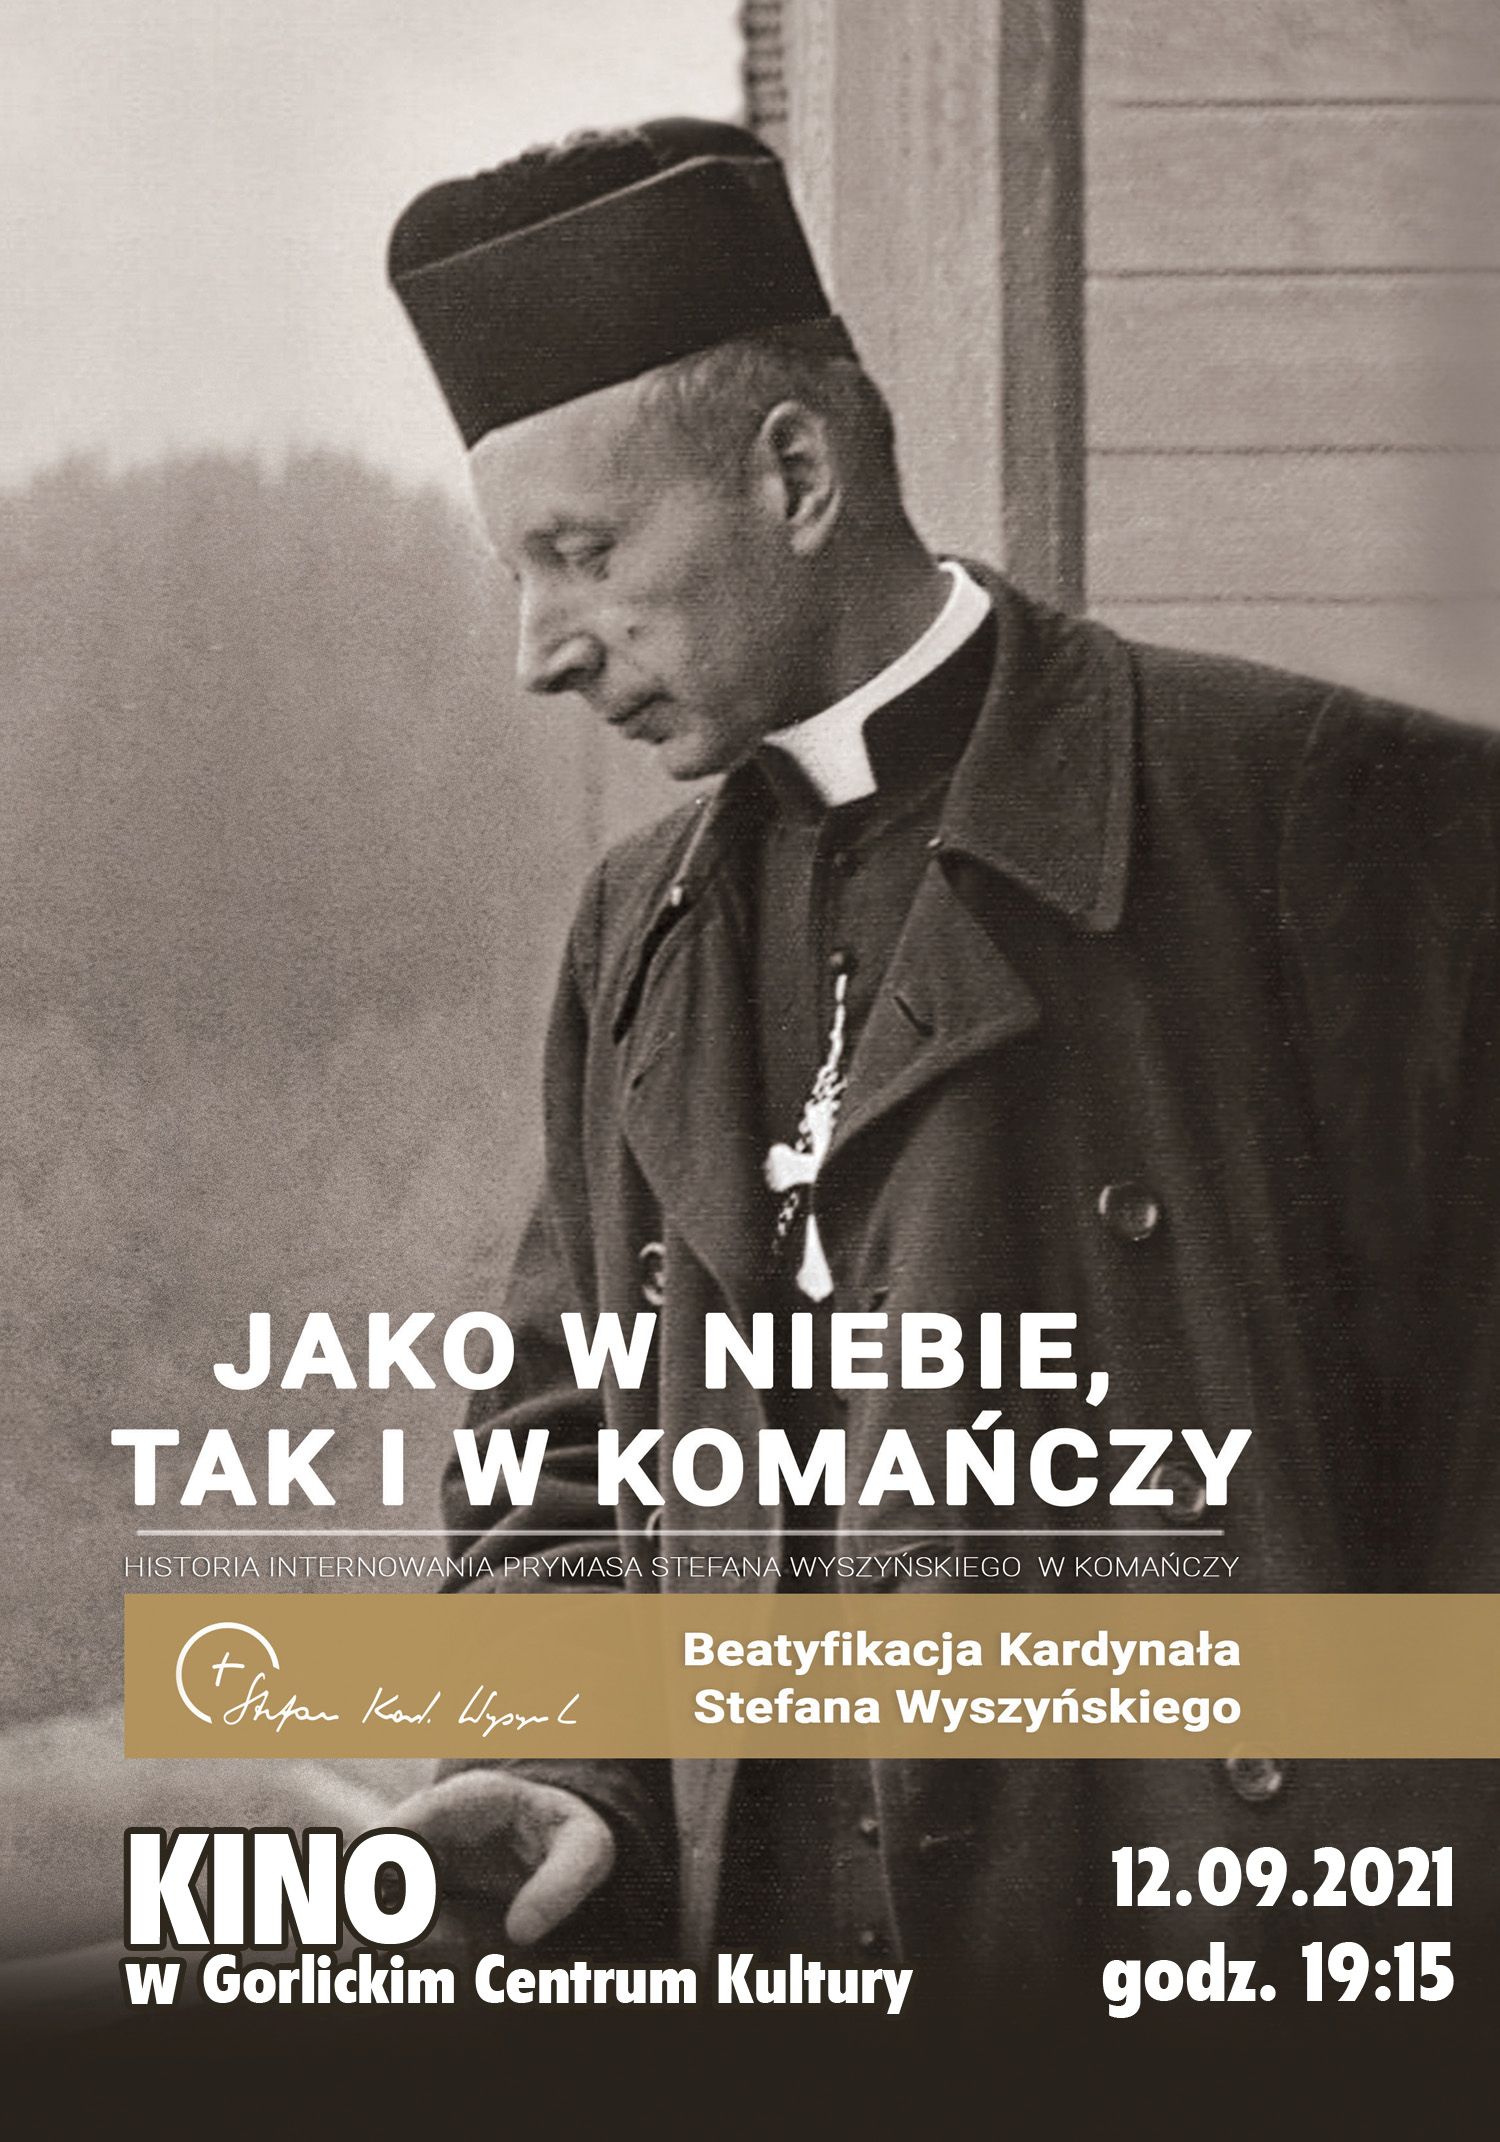 Plakat z wizrunkiem kard. Wyszyńskiego.